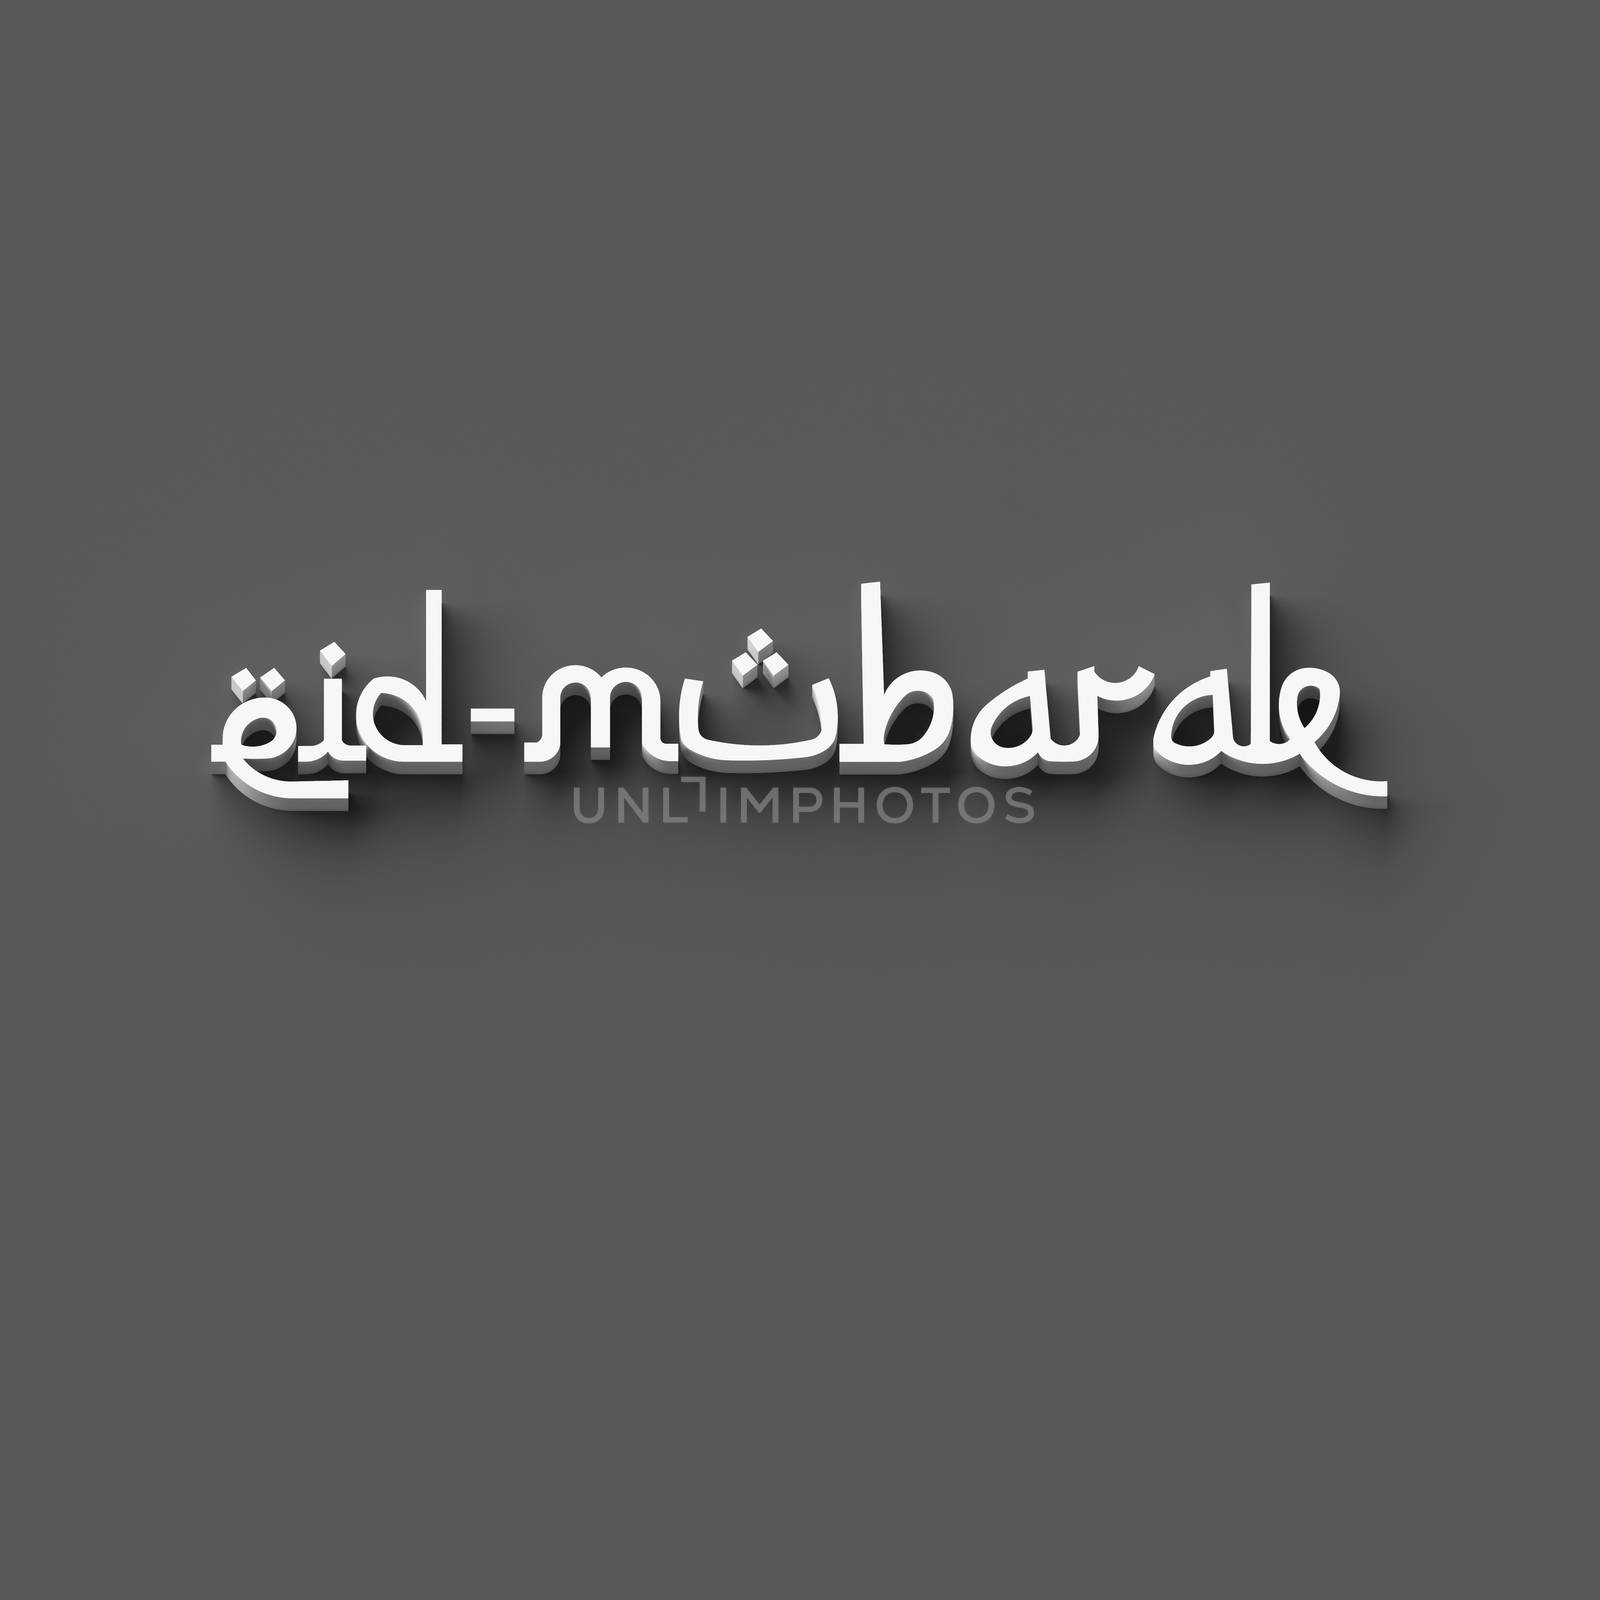 3D RENDERING WORDS 'eid-mubarak' by PrettyTG